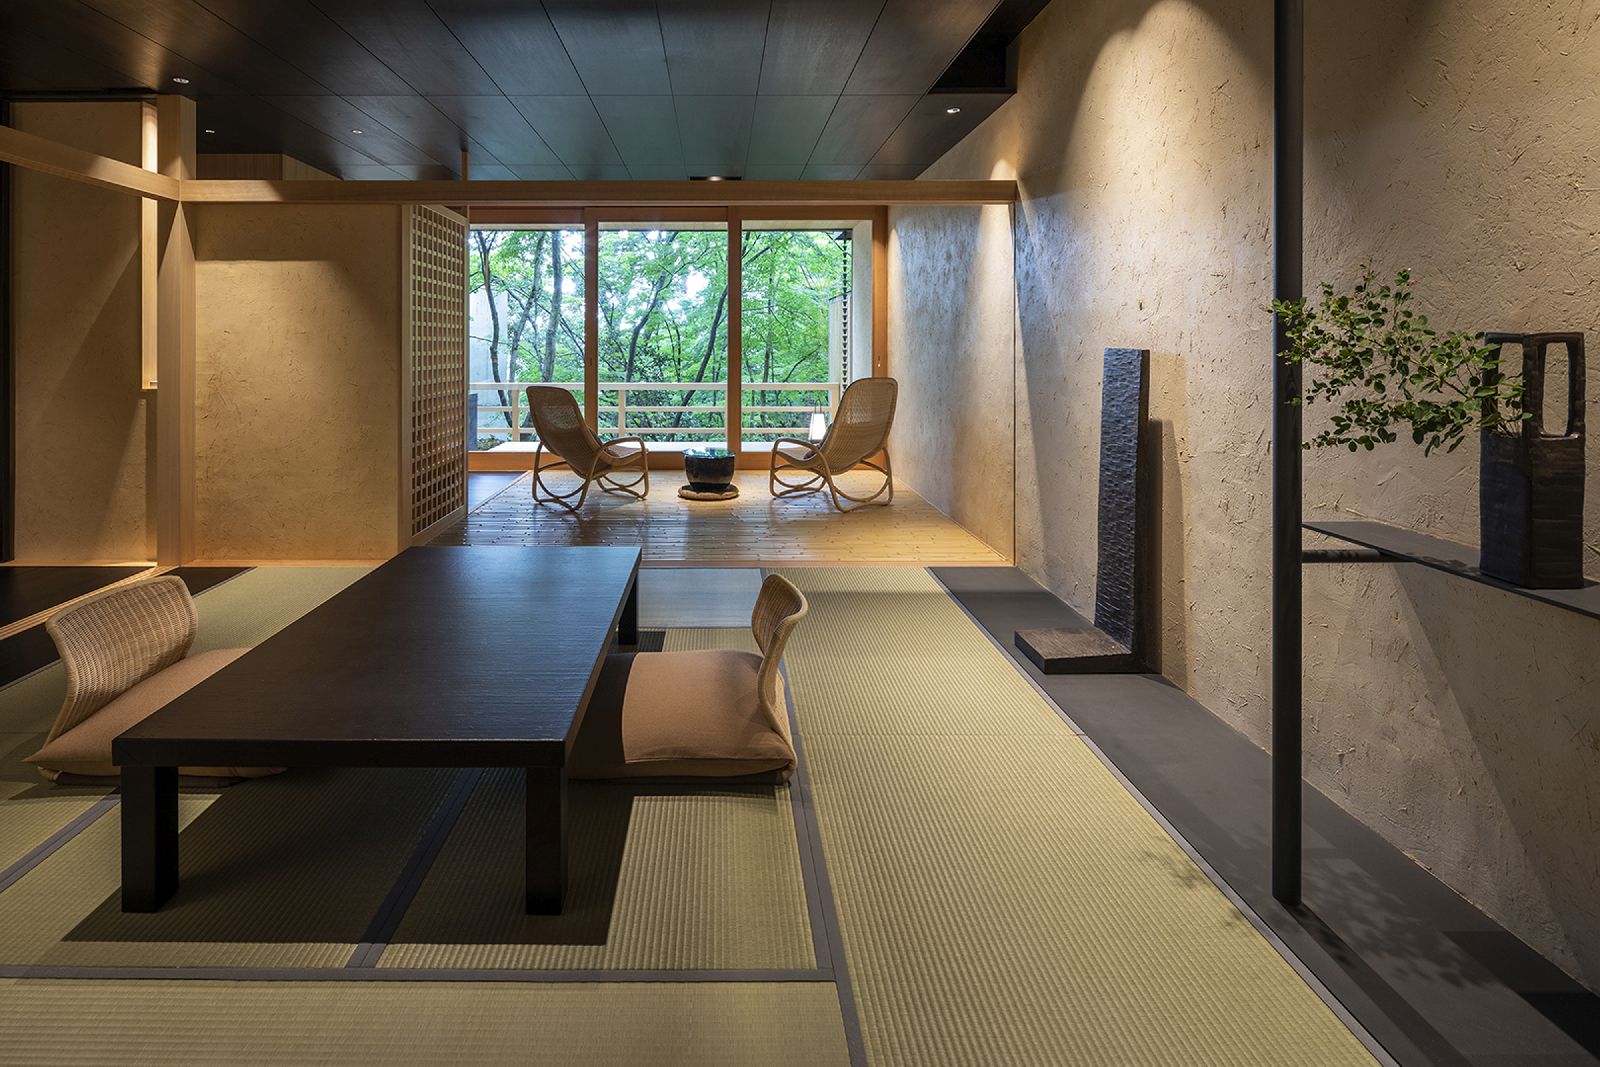 Living area and veranda of a tatami suite at Beniya Mukayu ryokan in Japan